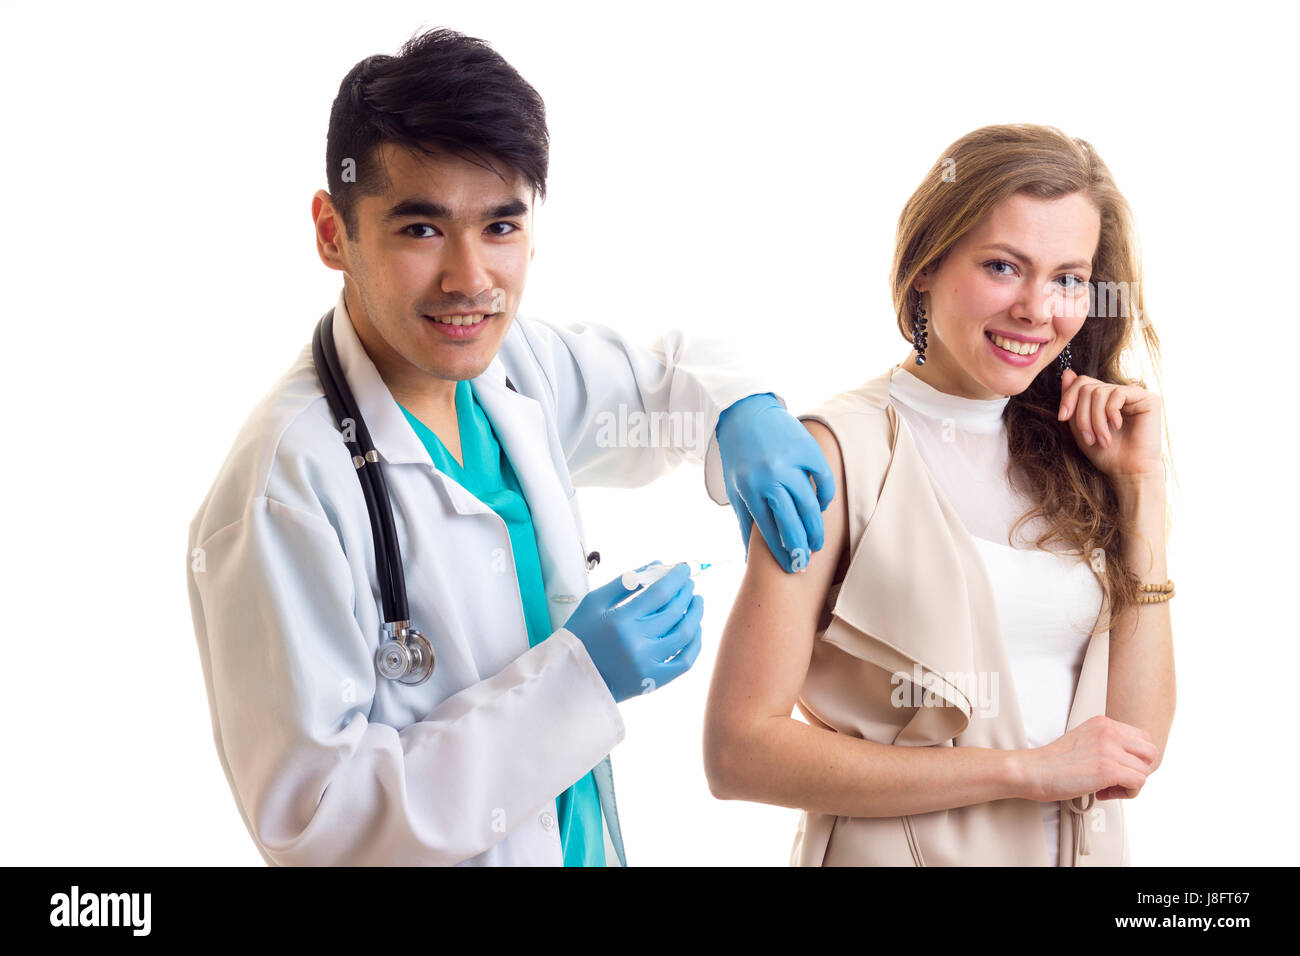 Junge Smartlooking Arzt mit dunklem Haar im weißen Kleid mit Stethoskop und blaue Handschuhe machen eine Injektion von junge lächelnde Frau mit langen braunen hai Stockfoto